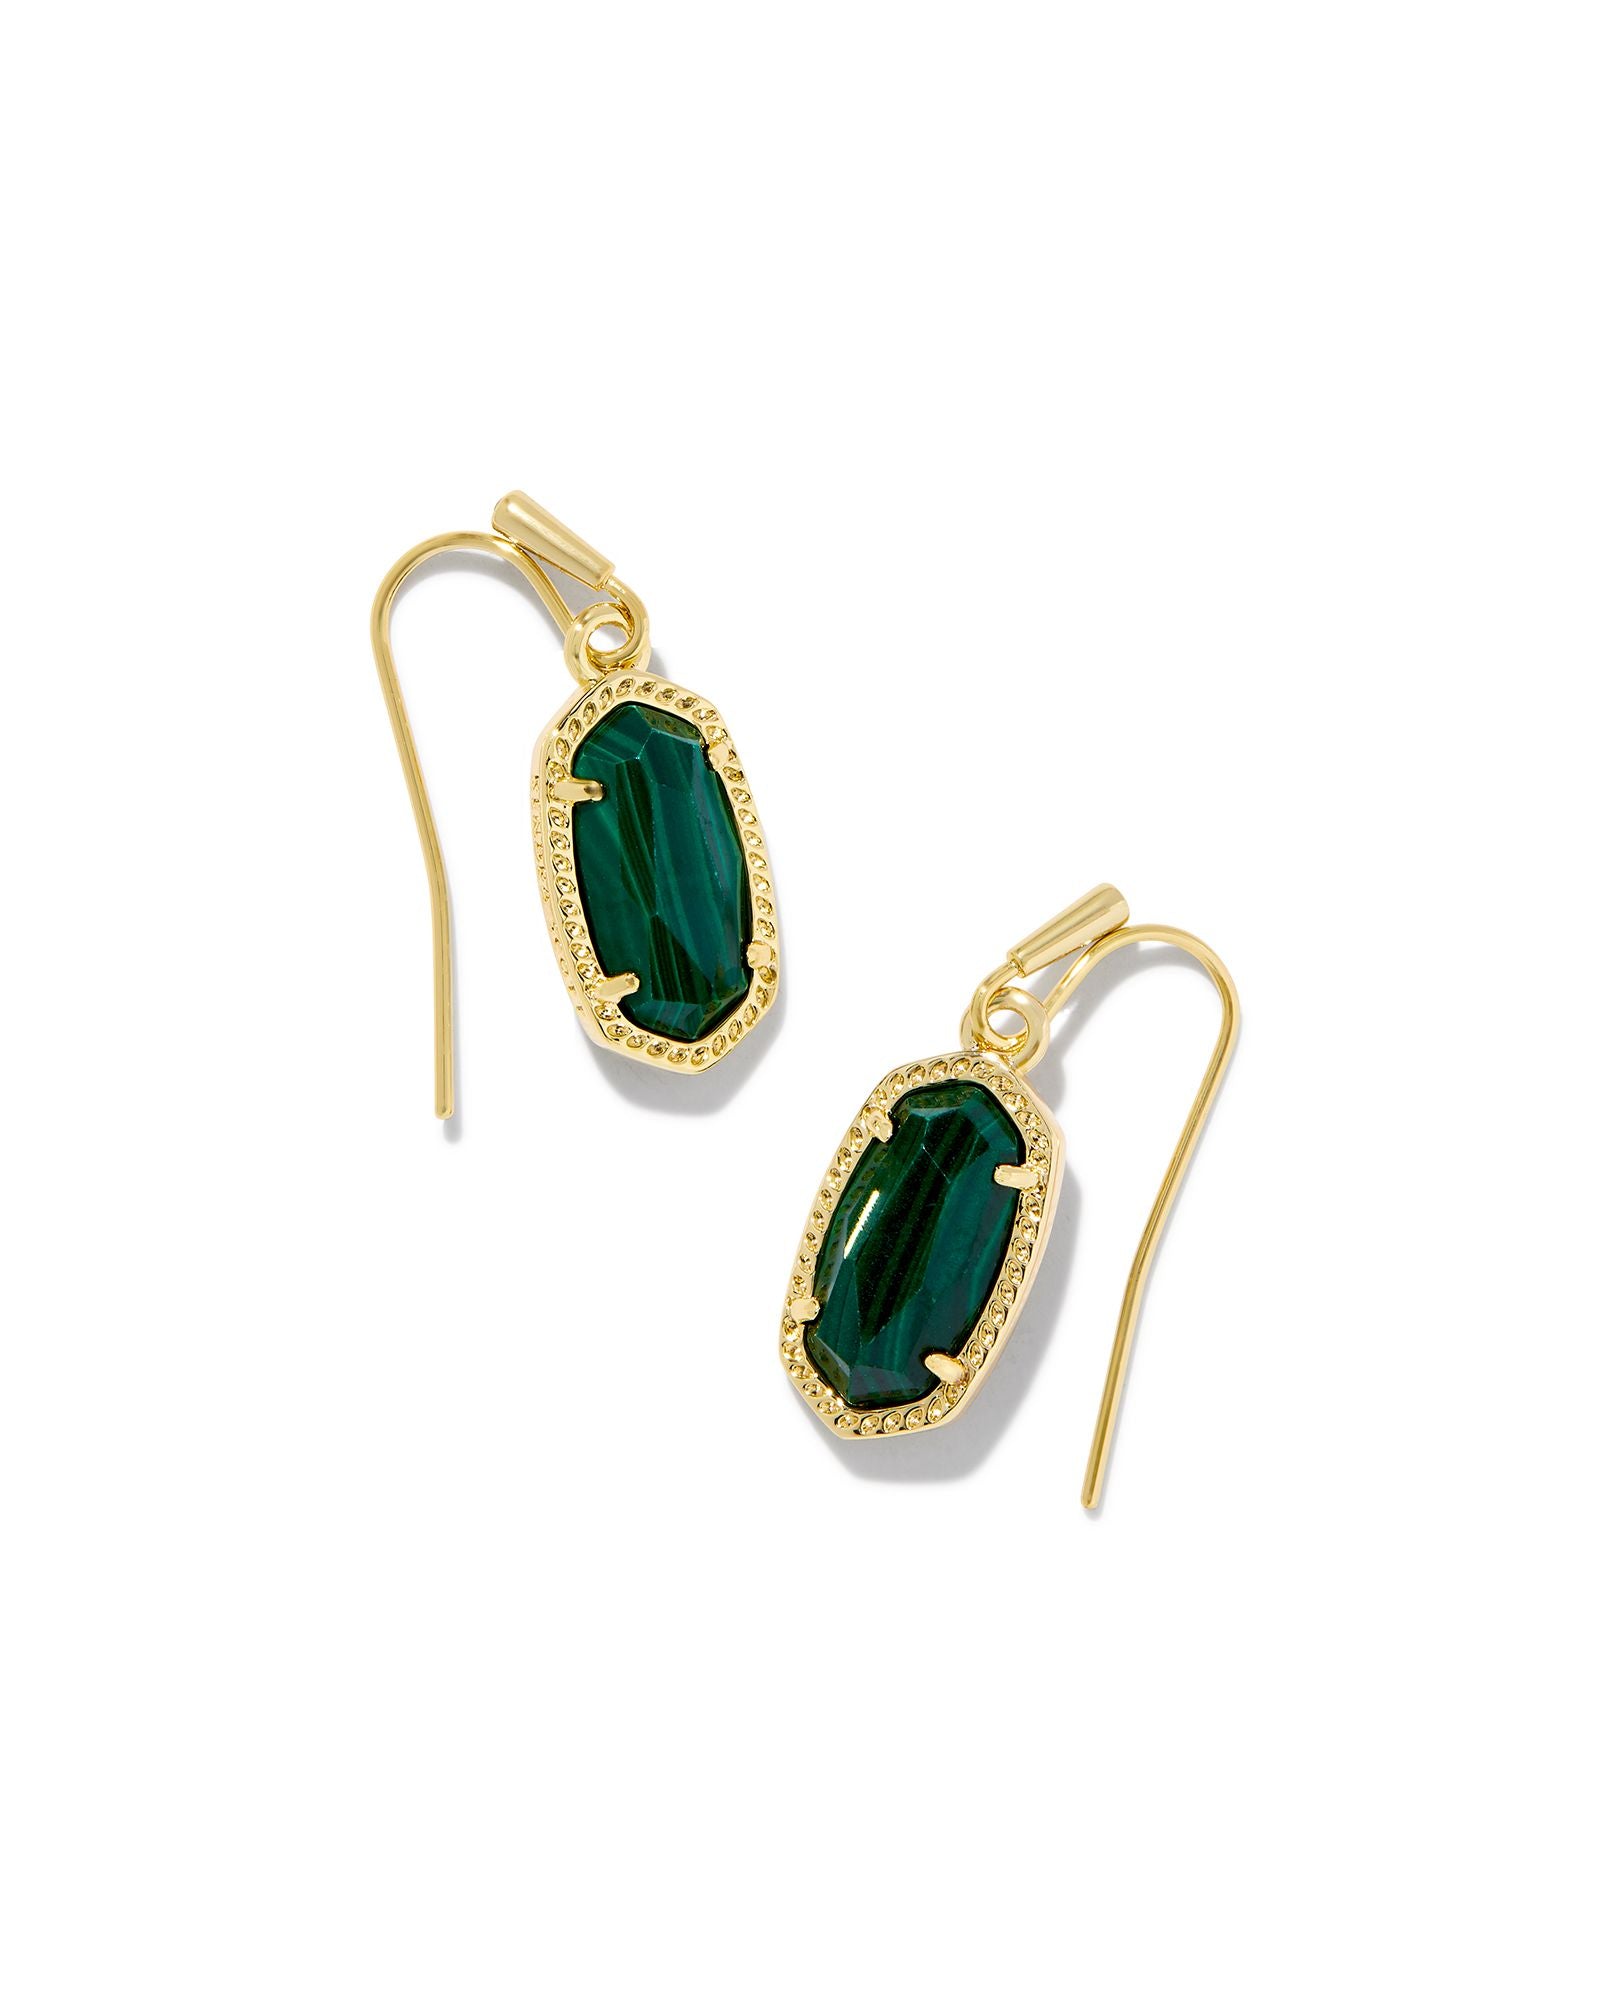 Lee Earring in Gold Green Malachite